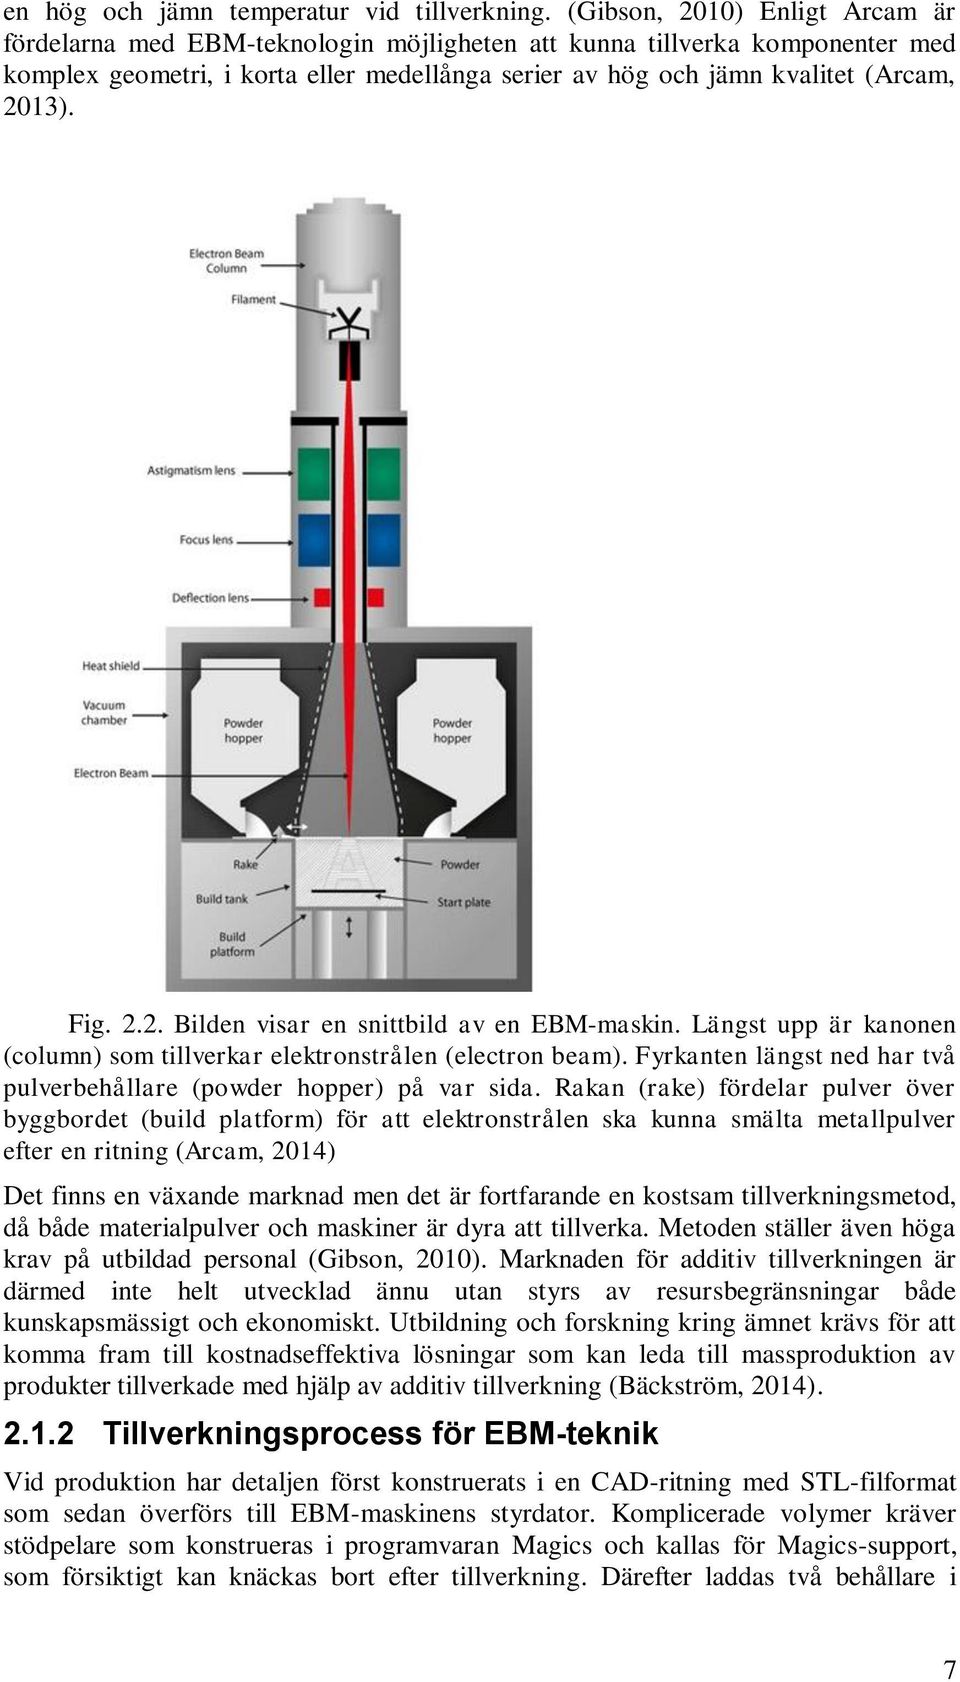 Fig. 2.2. Bilden visar en snittbild av en EBM-maskin. Längst upp är kanonen (column) som tillverkar elektronstrålen (electron beam).